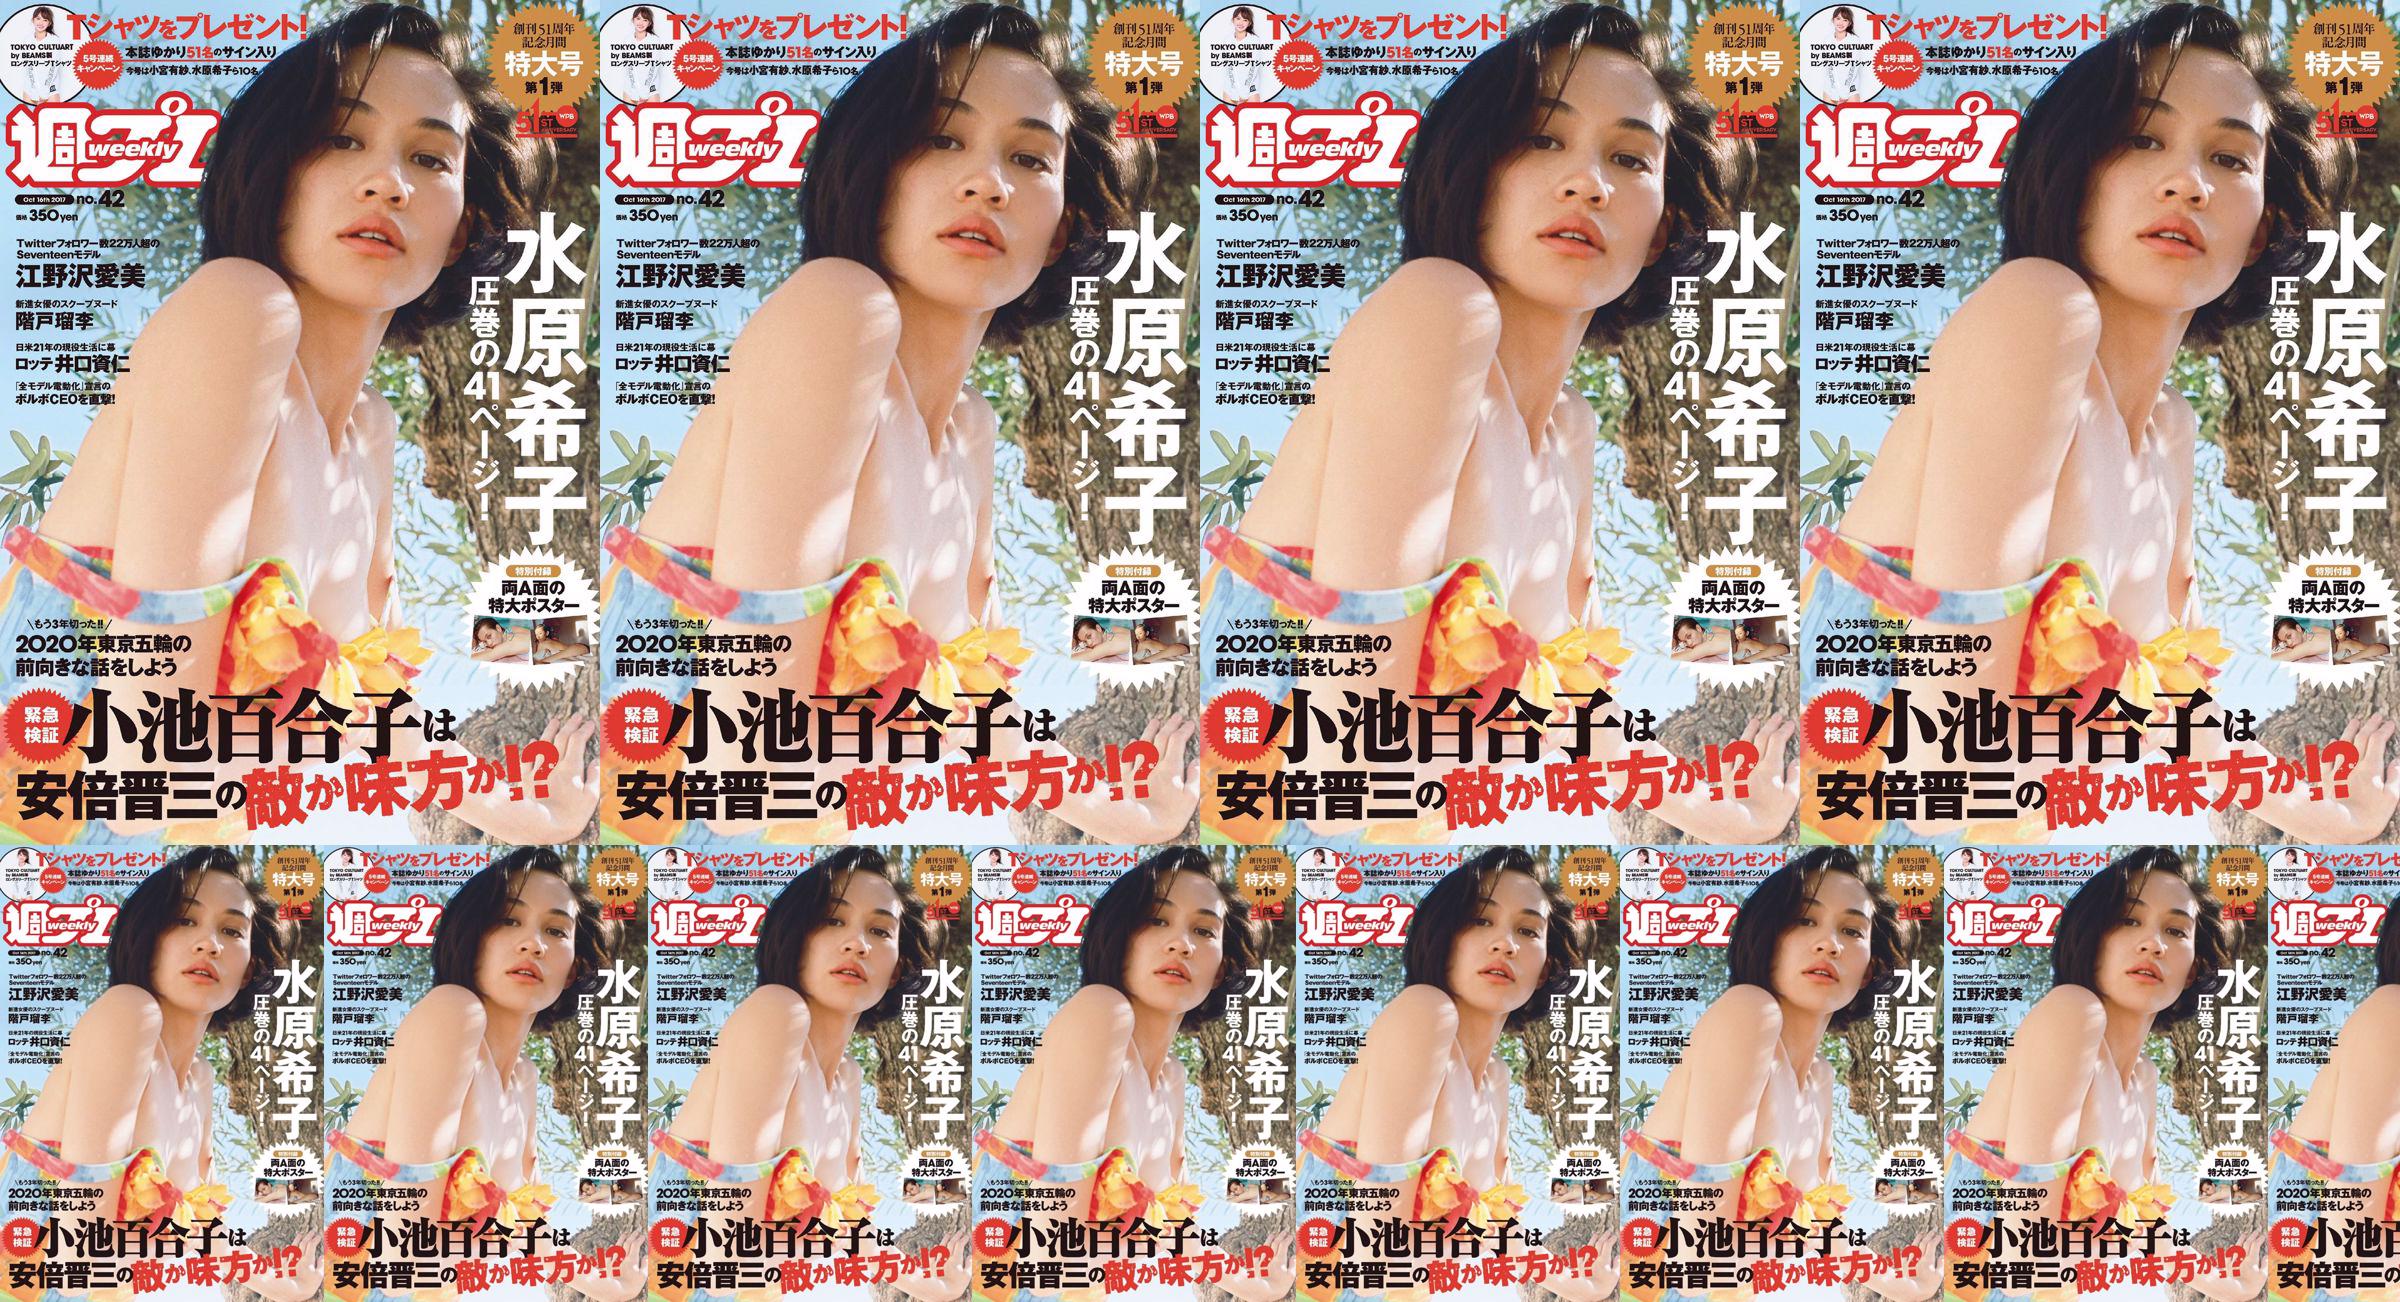 Kiko Mizuhara Manami Enosawa Serina Fukui Miu Nakamura Ruri Shinato [Wöchentlicher Playboy] 2017 Nr. 42 Fotomagazin No.f3251c Seite 16